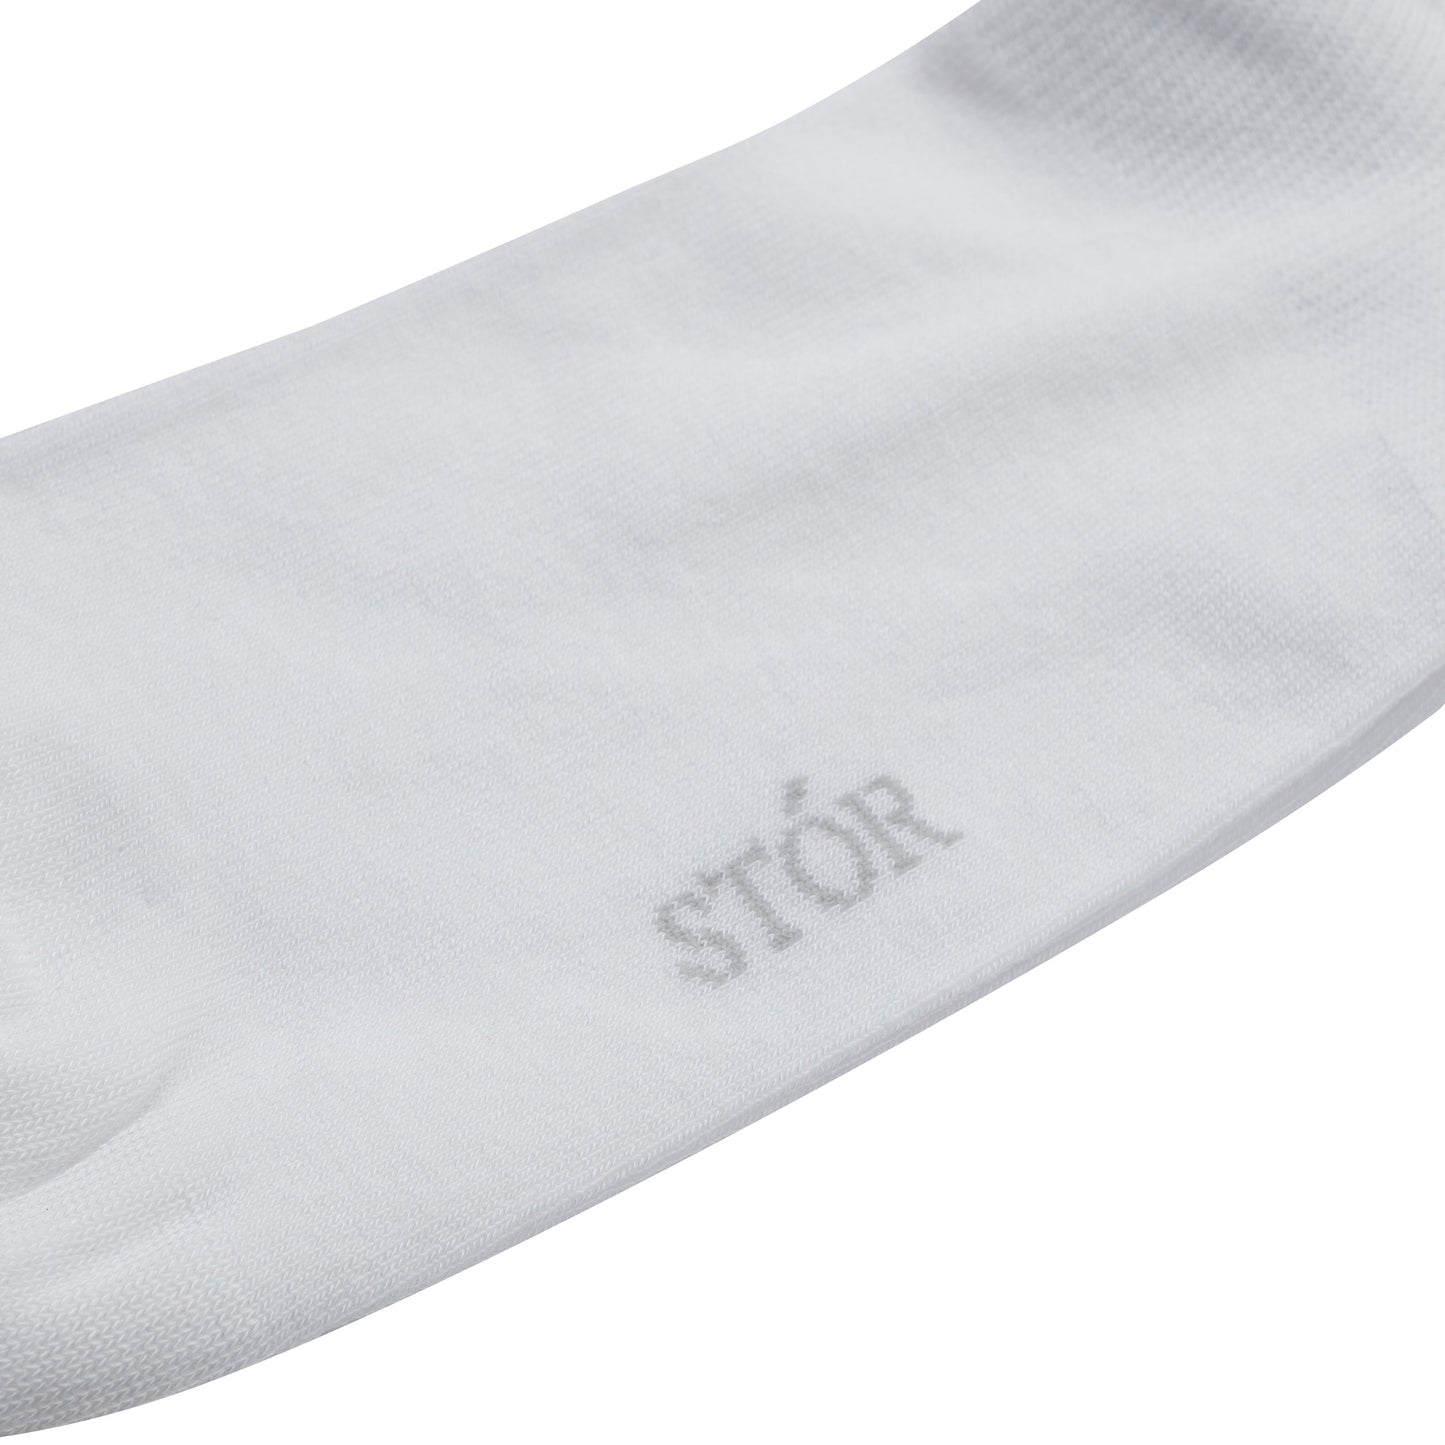 Ankle Socks 2 Pack - White